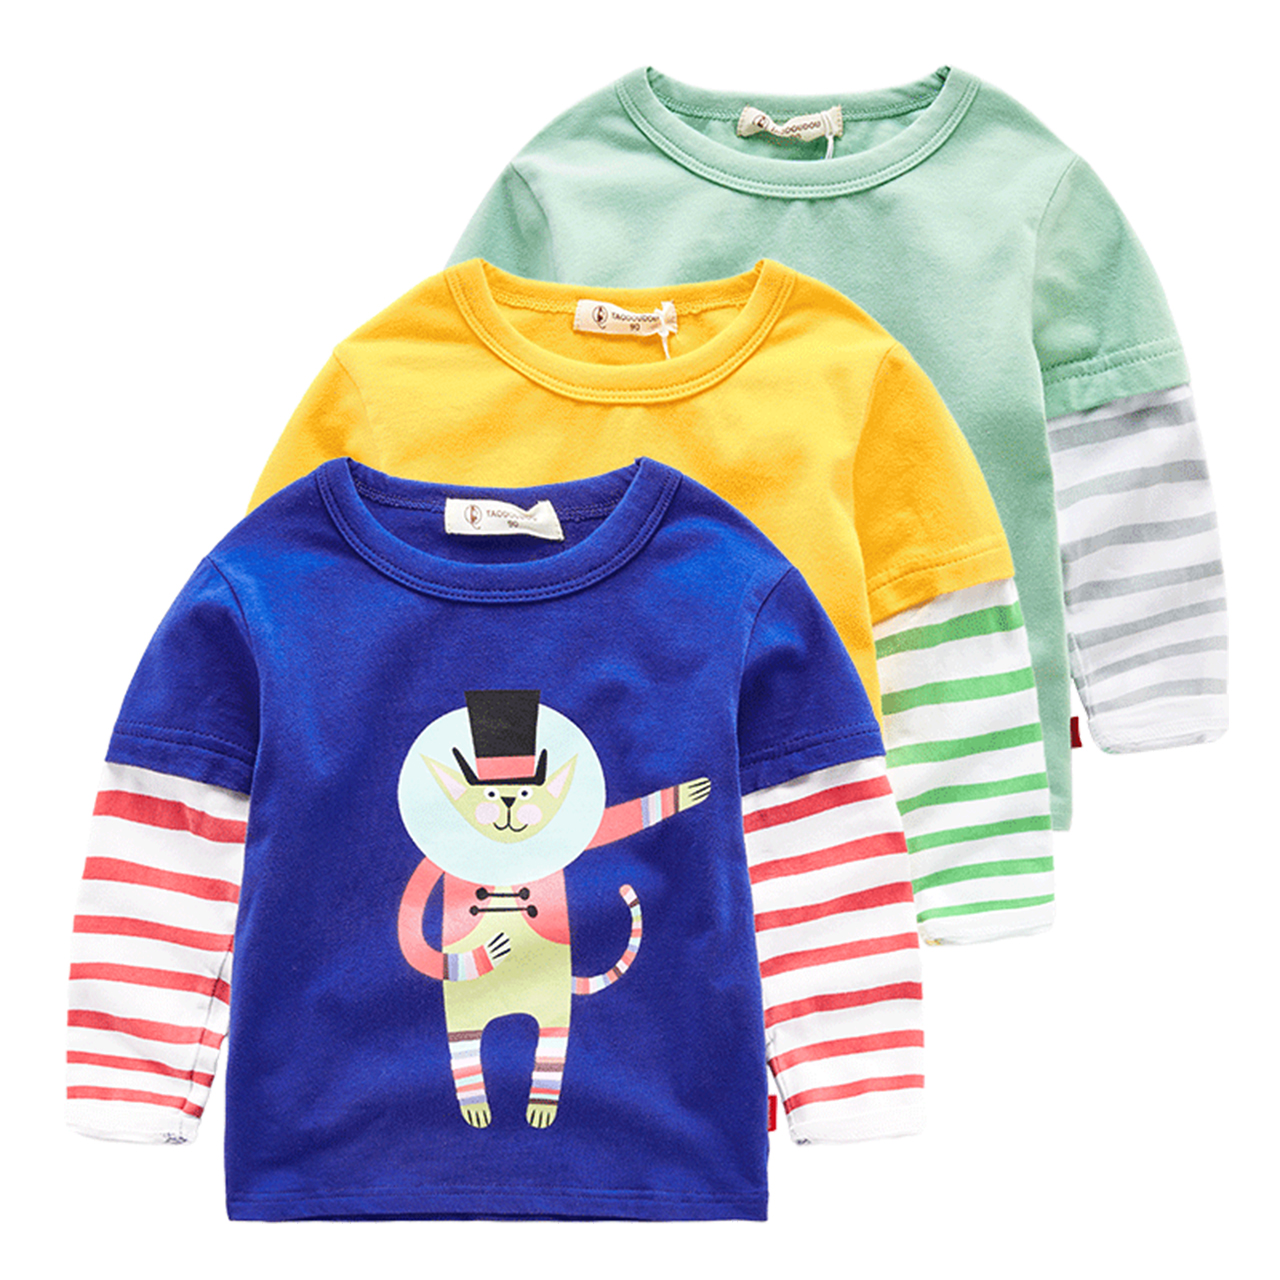 兜兜童装小铺原创设计男童假两件长袖体恤宝宝卡通T恤小童衣服潮